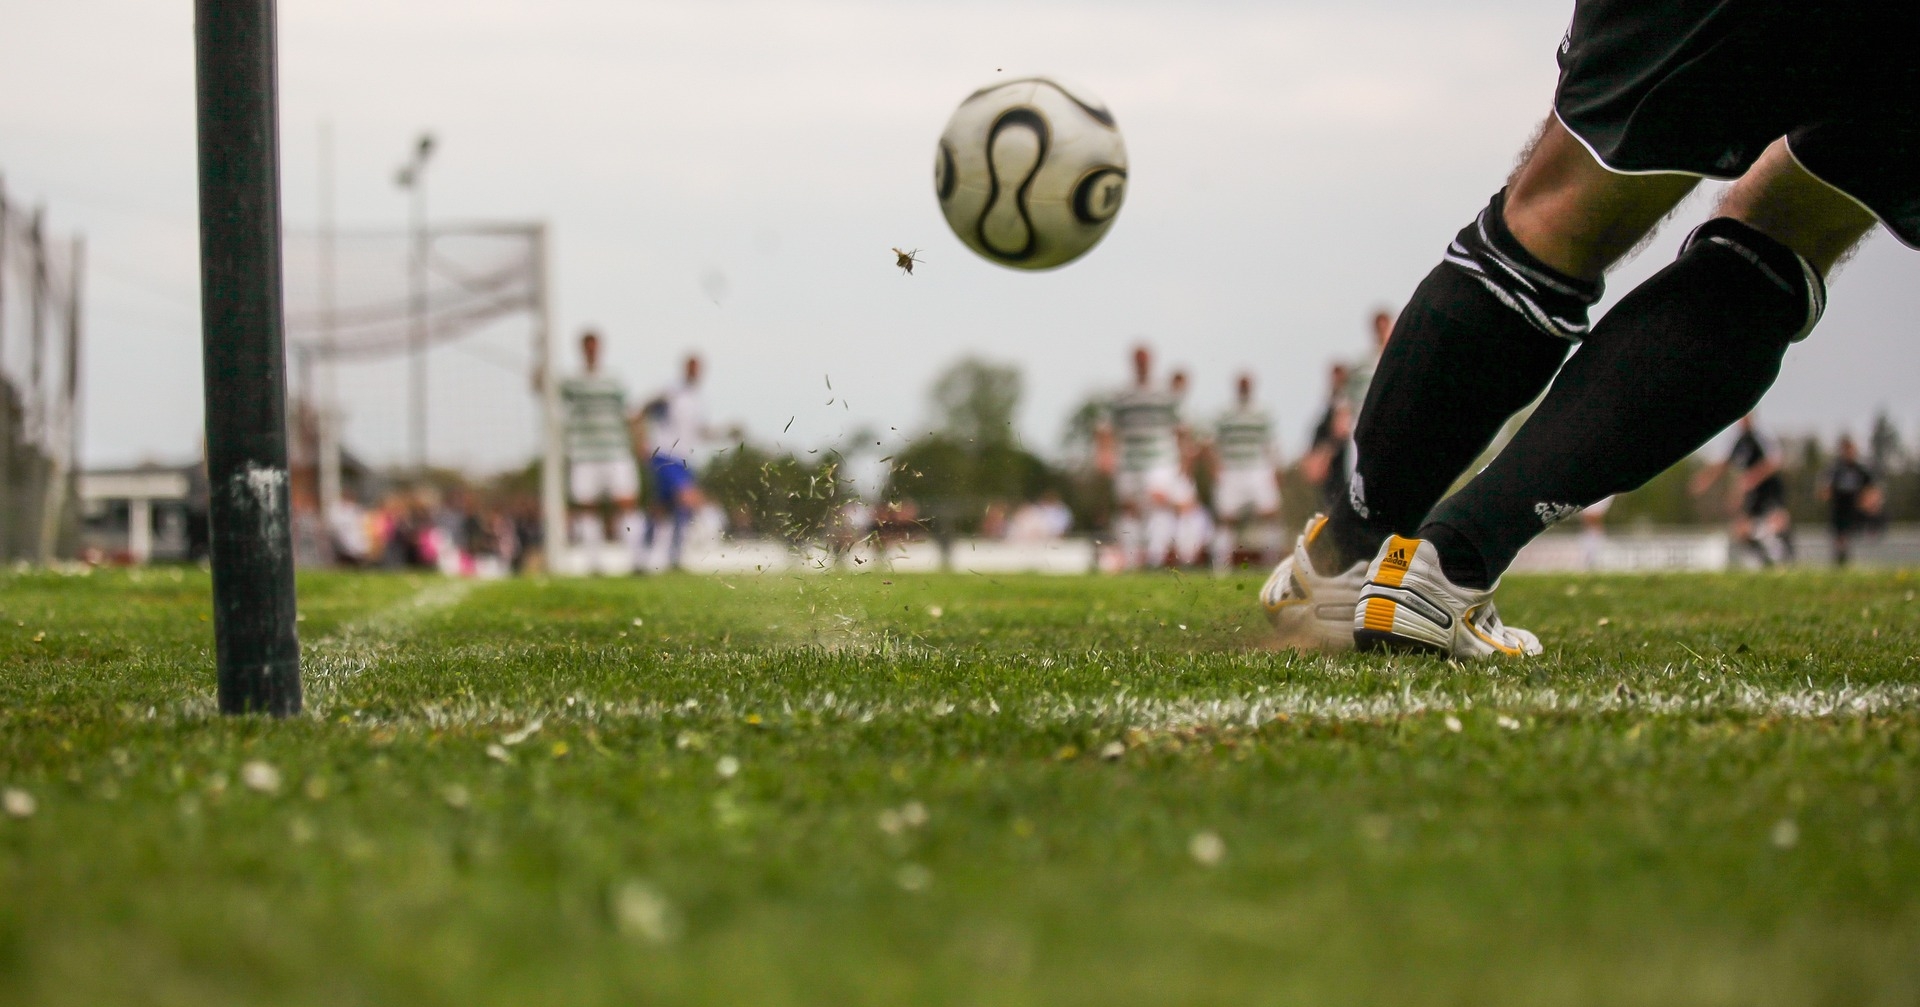 Fußballfeld, Fußball und Beine einer Person